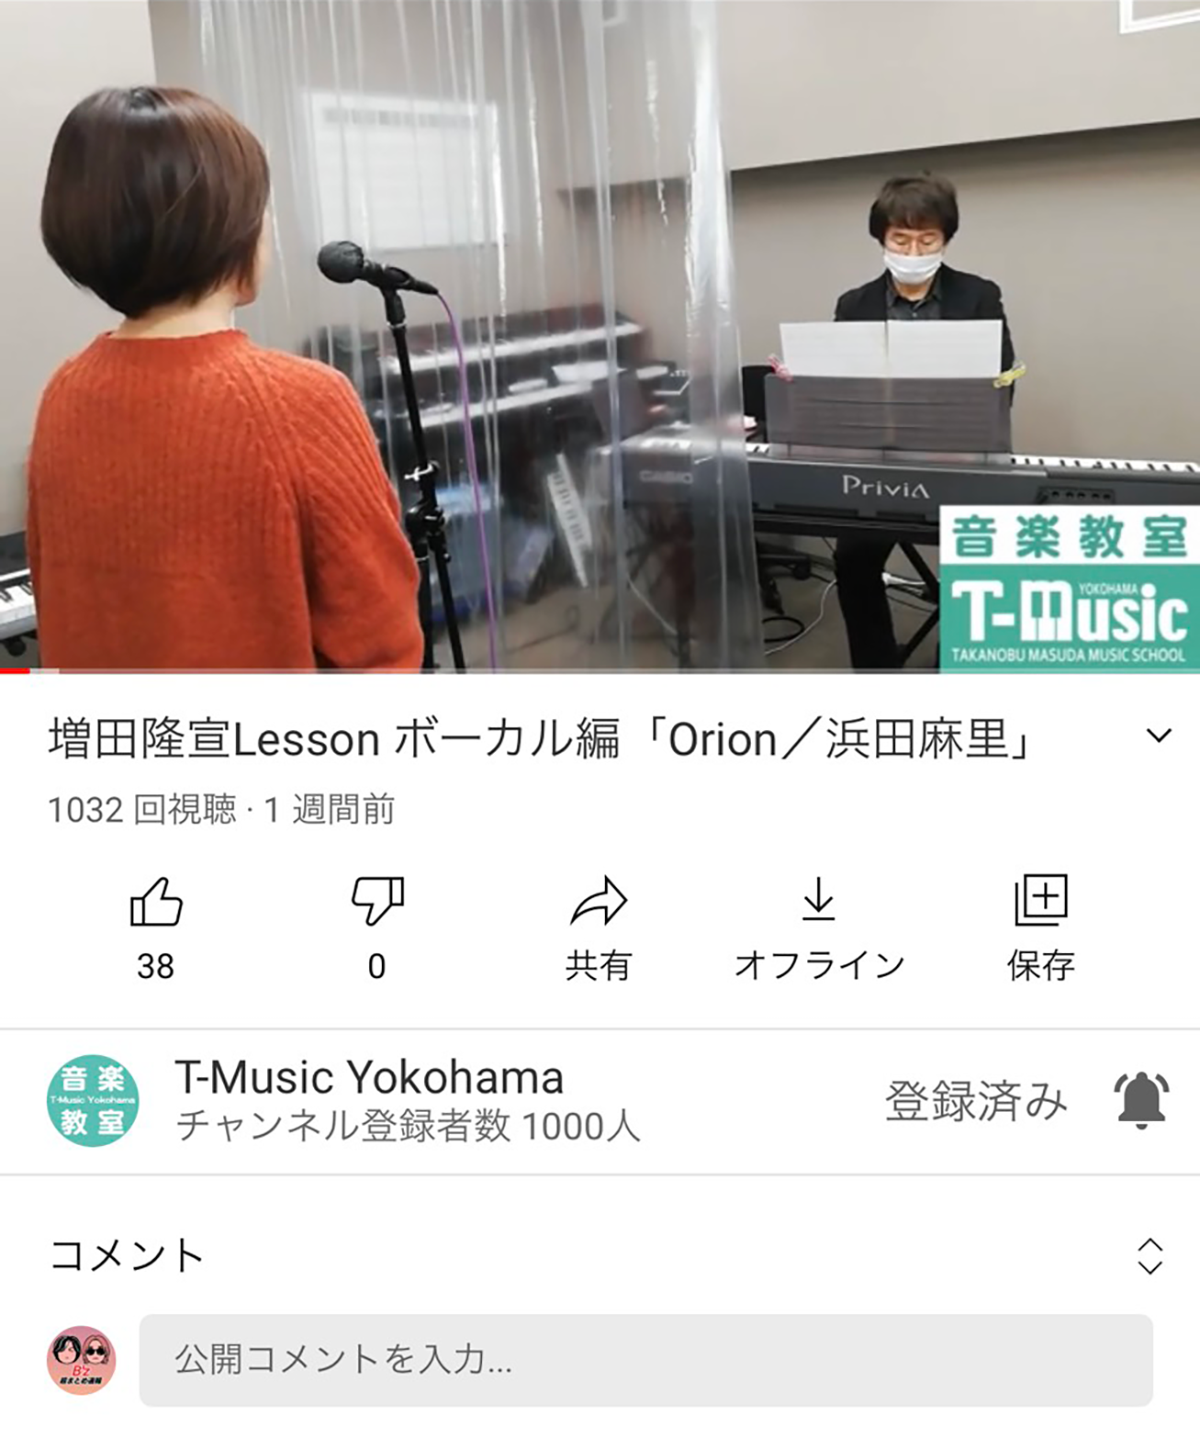 増田隆宣のスクールYouTubeチャンネルの動画の画面